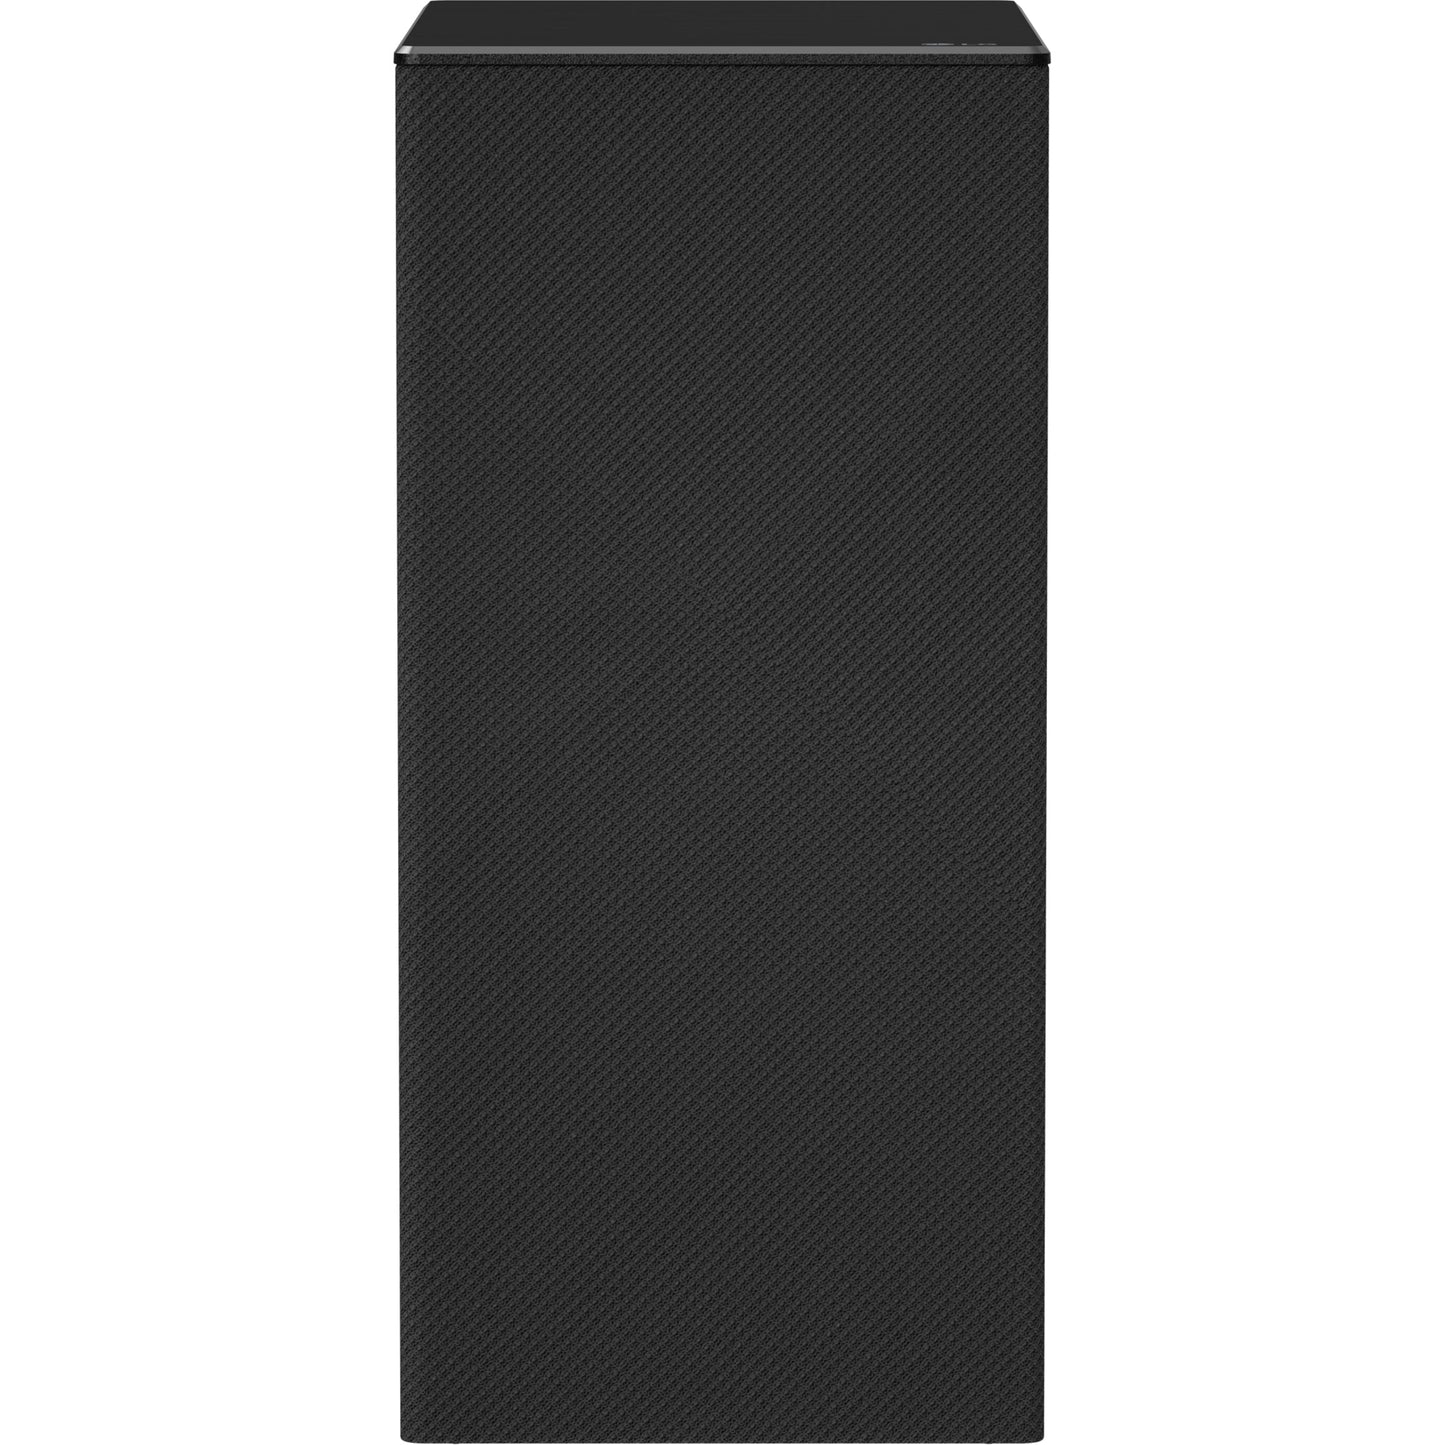 LG SN6Y 3.1 Bluetooth Speaker System